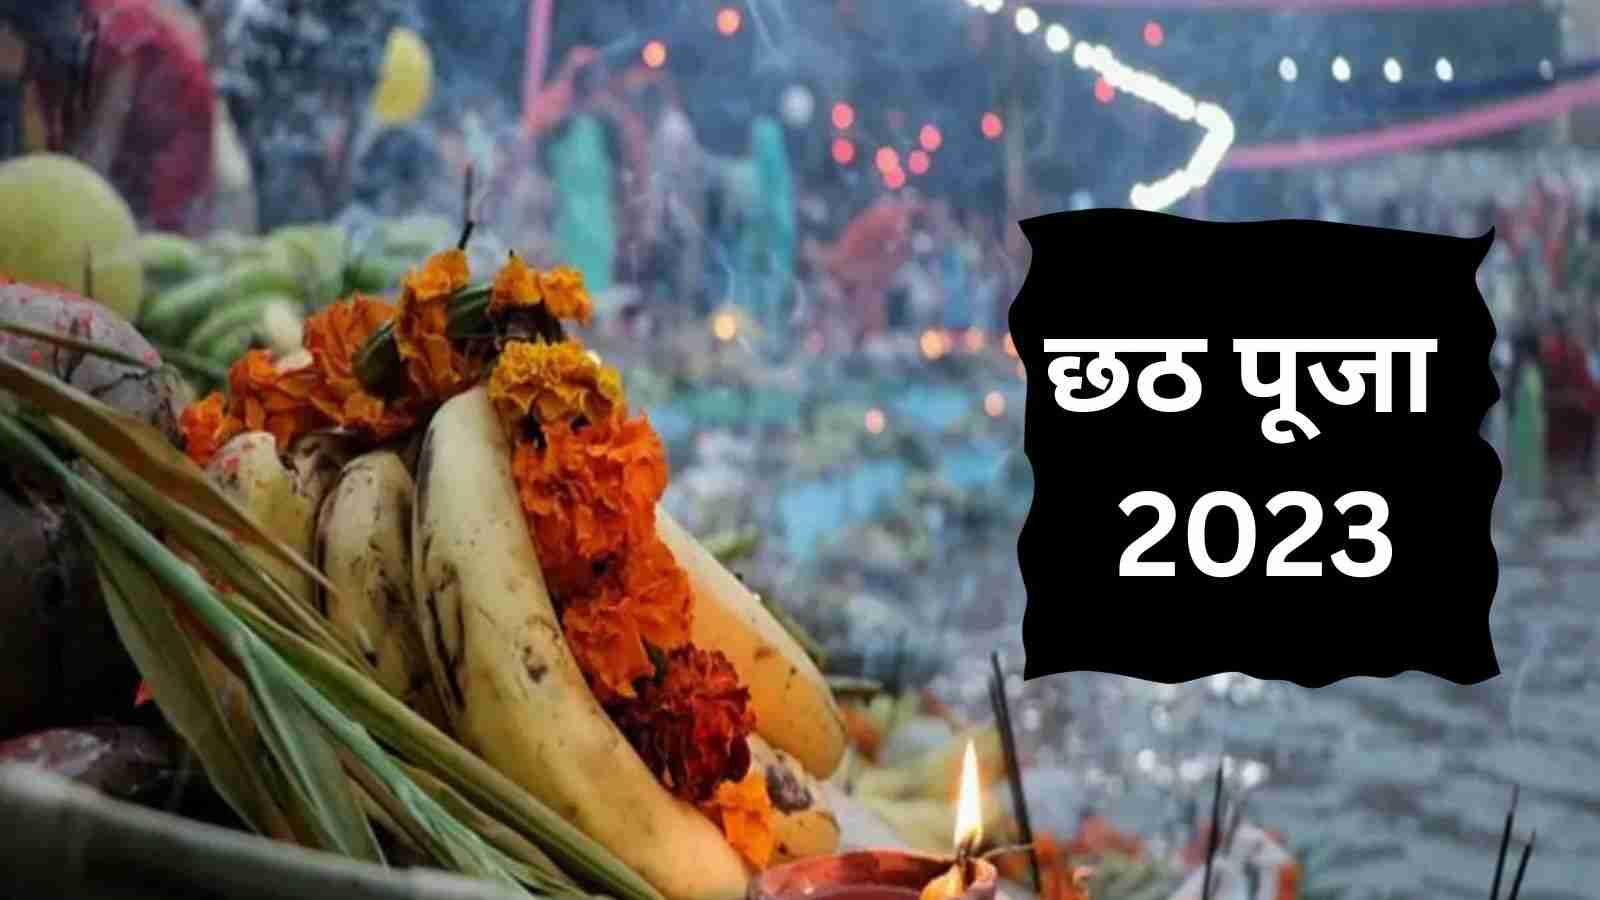 Chhath Puja 2023 छठी मैया की पूजा के लिए कौन कौन सी चीजें जरुरी है, जानिए इसका सही उपाय